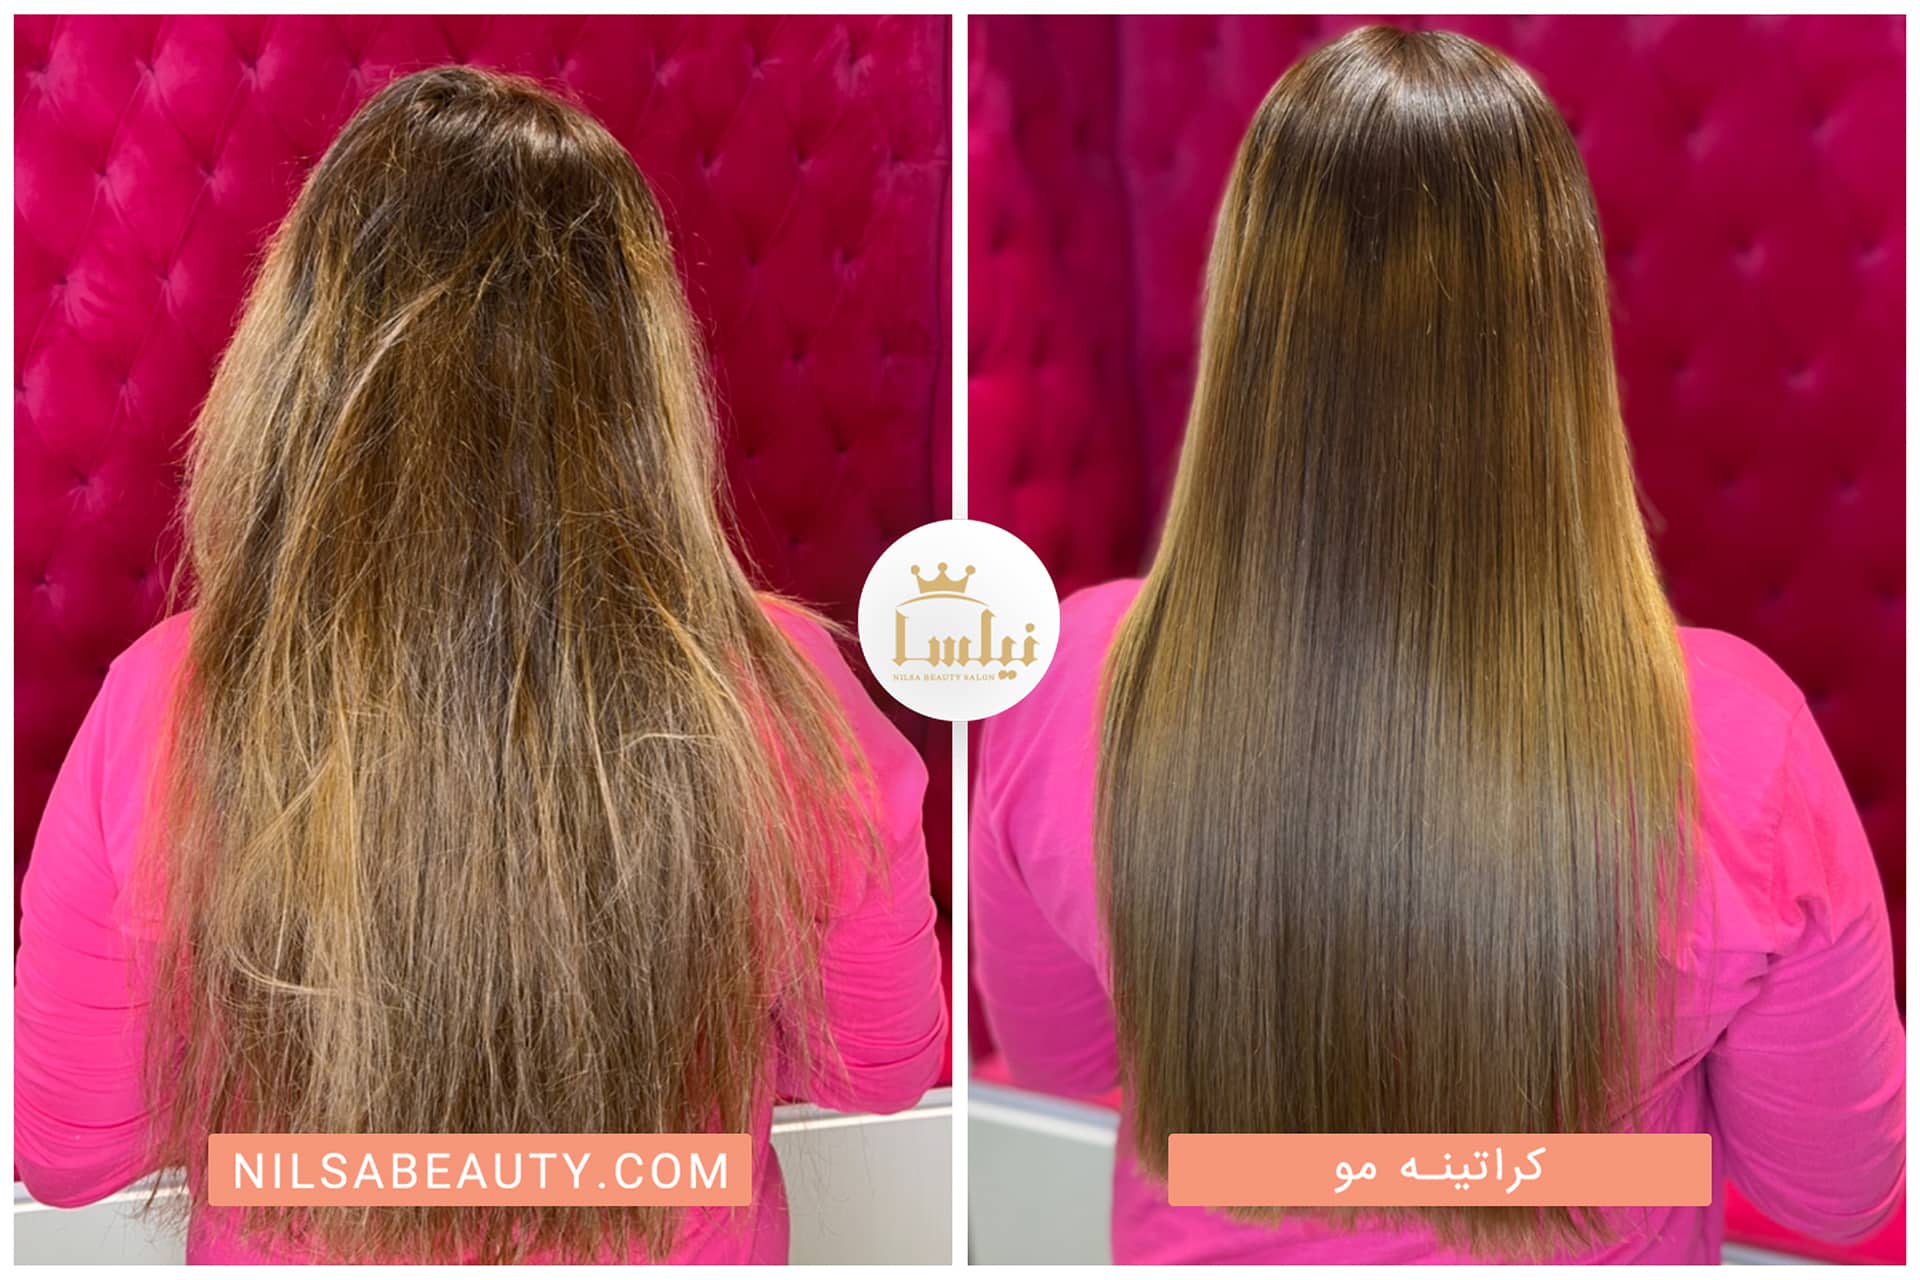 کراتینه مو بانو جوان با موی بلوند متوسط سالن زیبایی نیلسا به صورت قبل و بعد